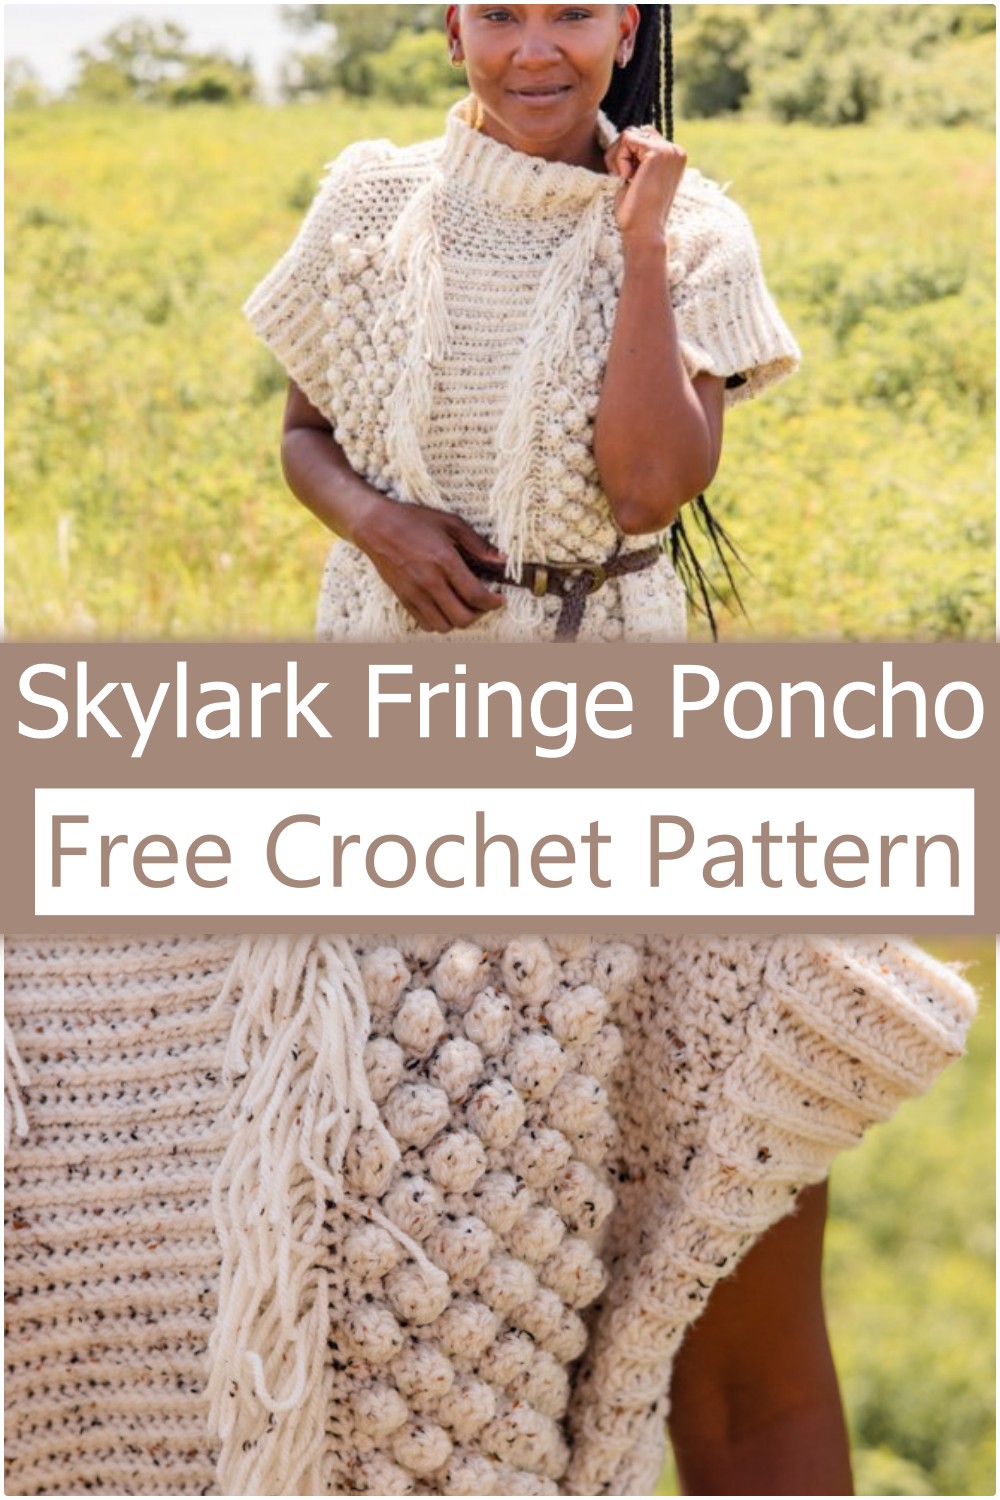 Skylark Fringe Crochet Poncho Free Pattern